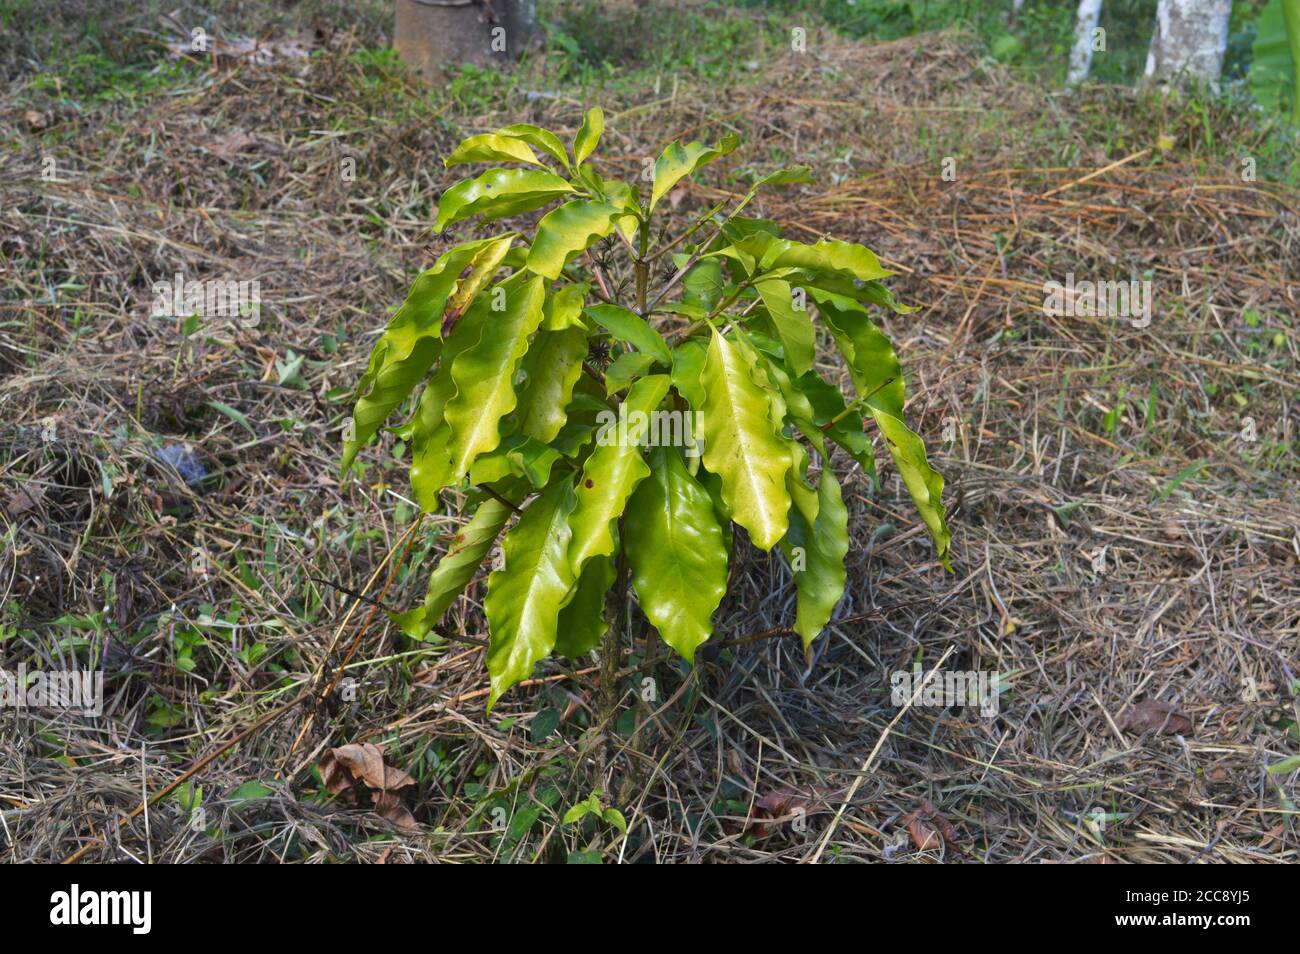 Coffea est un genre de plantes à fleurs de la famille des Rubiaceae. Les espèces de Coffea sont des arbustes ou de petits arbres indigènes à l'Afrique tropicale et australe Banque D'Images